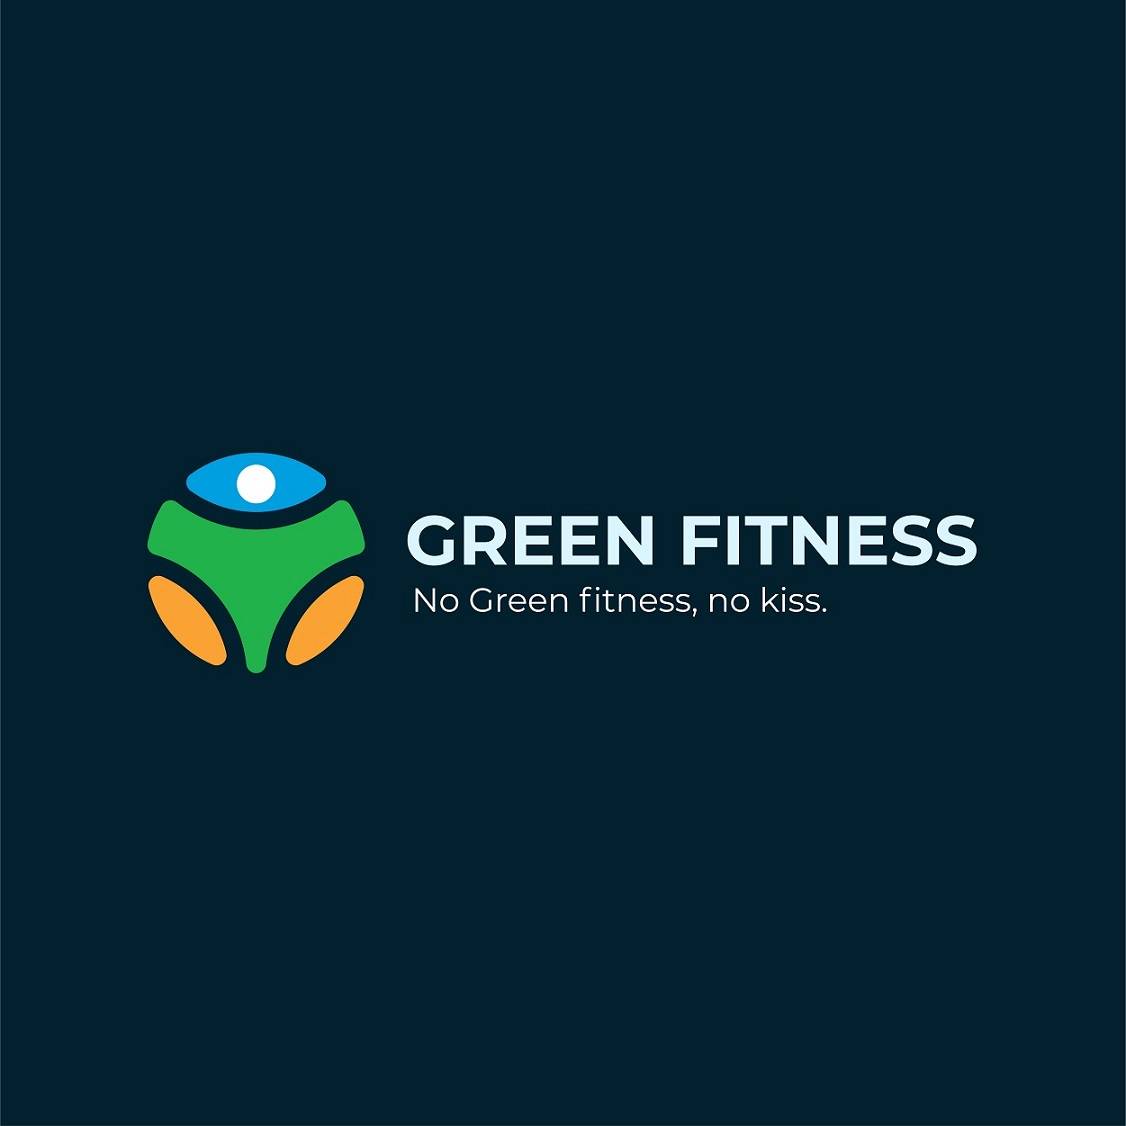 Green fitness logo design